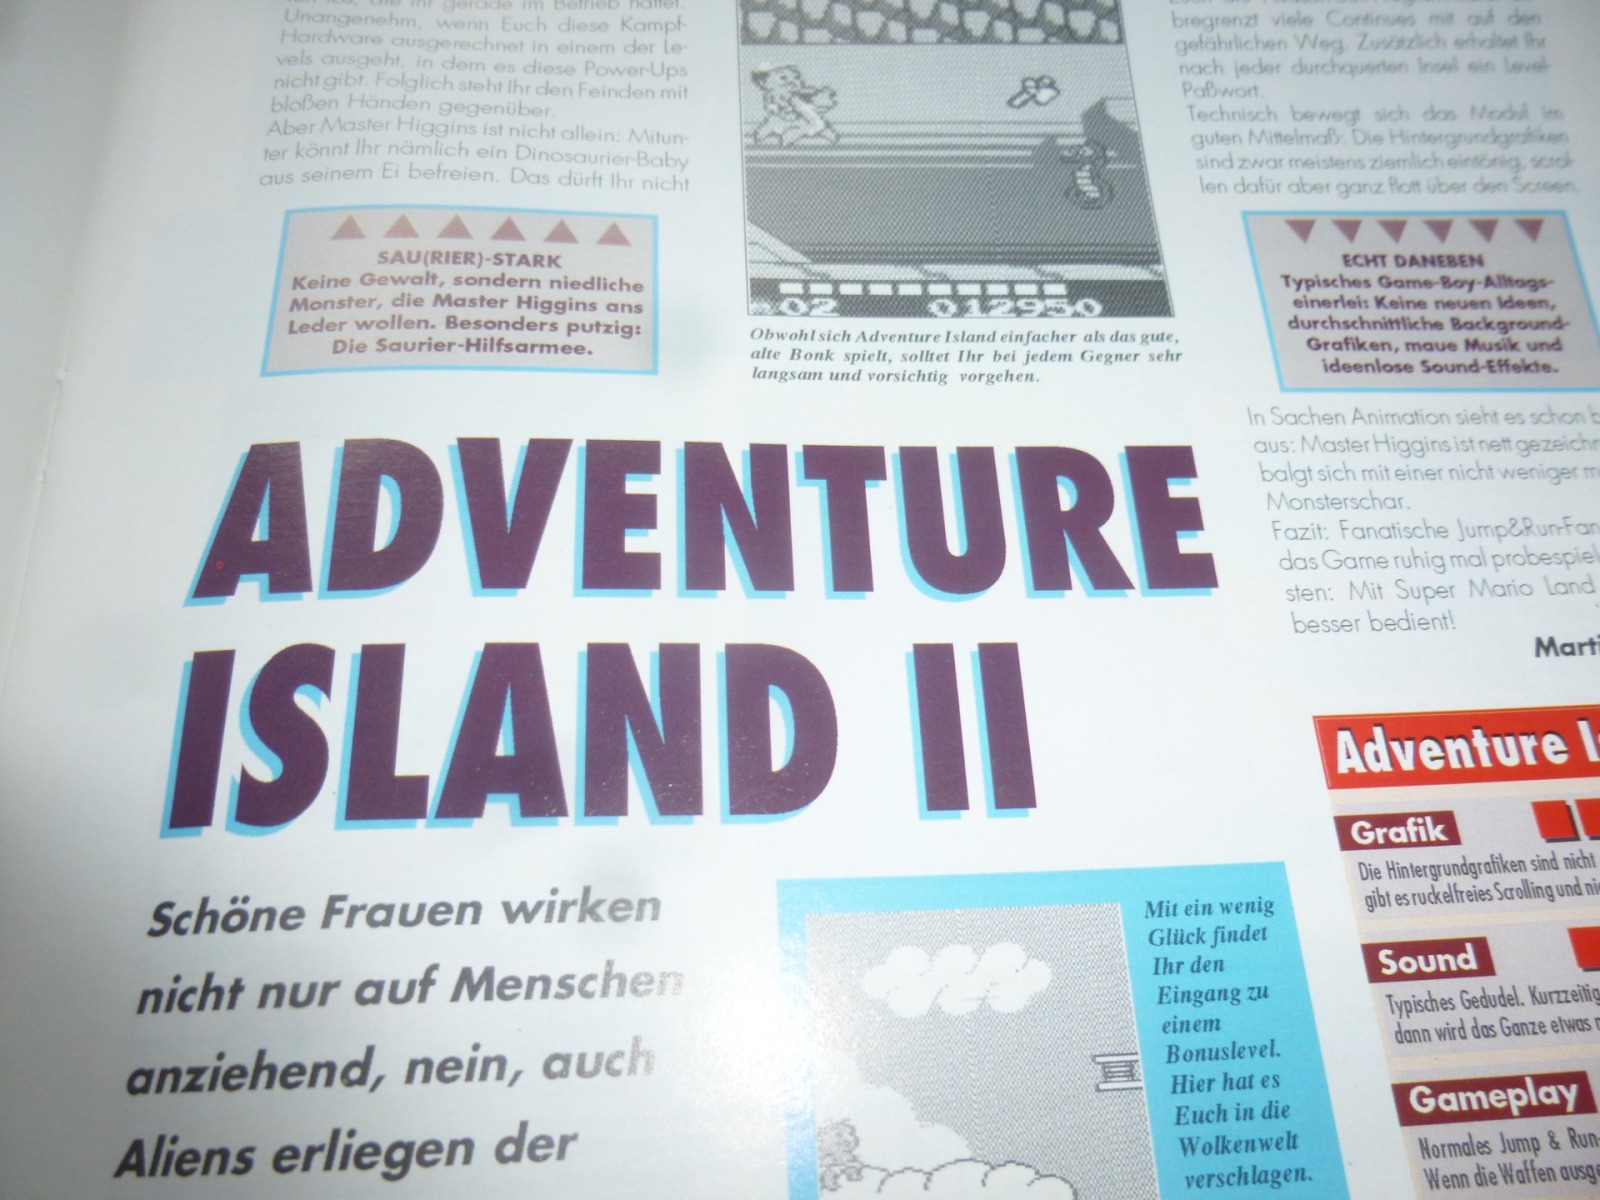 TOTAL Das unabhängige Magazin - 100% Nintendo - Ausgabe 7/93 1993 17